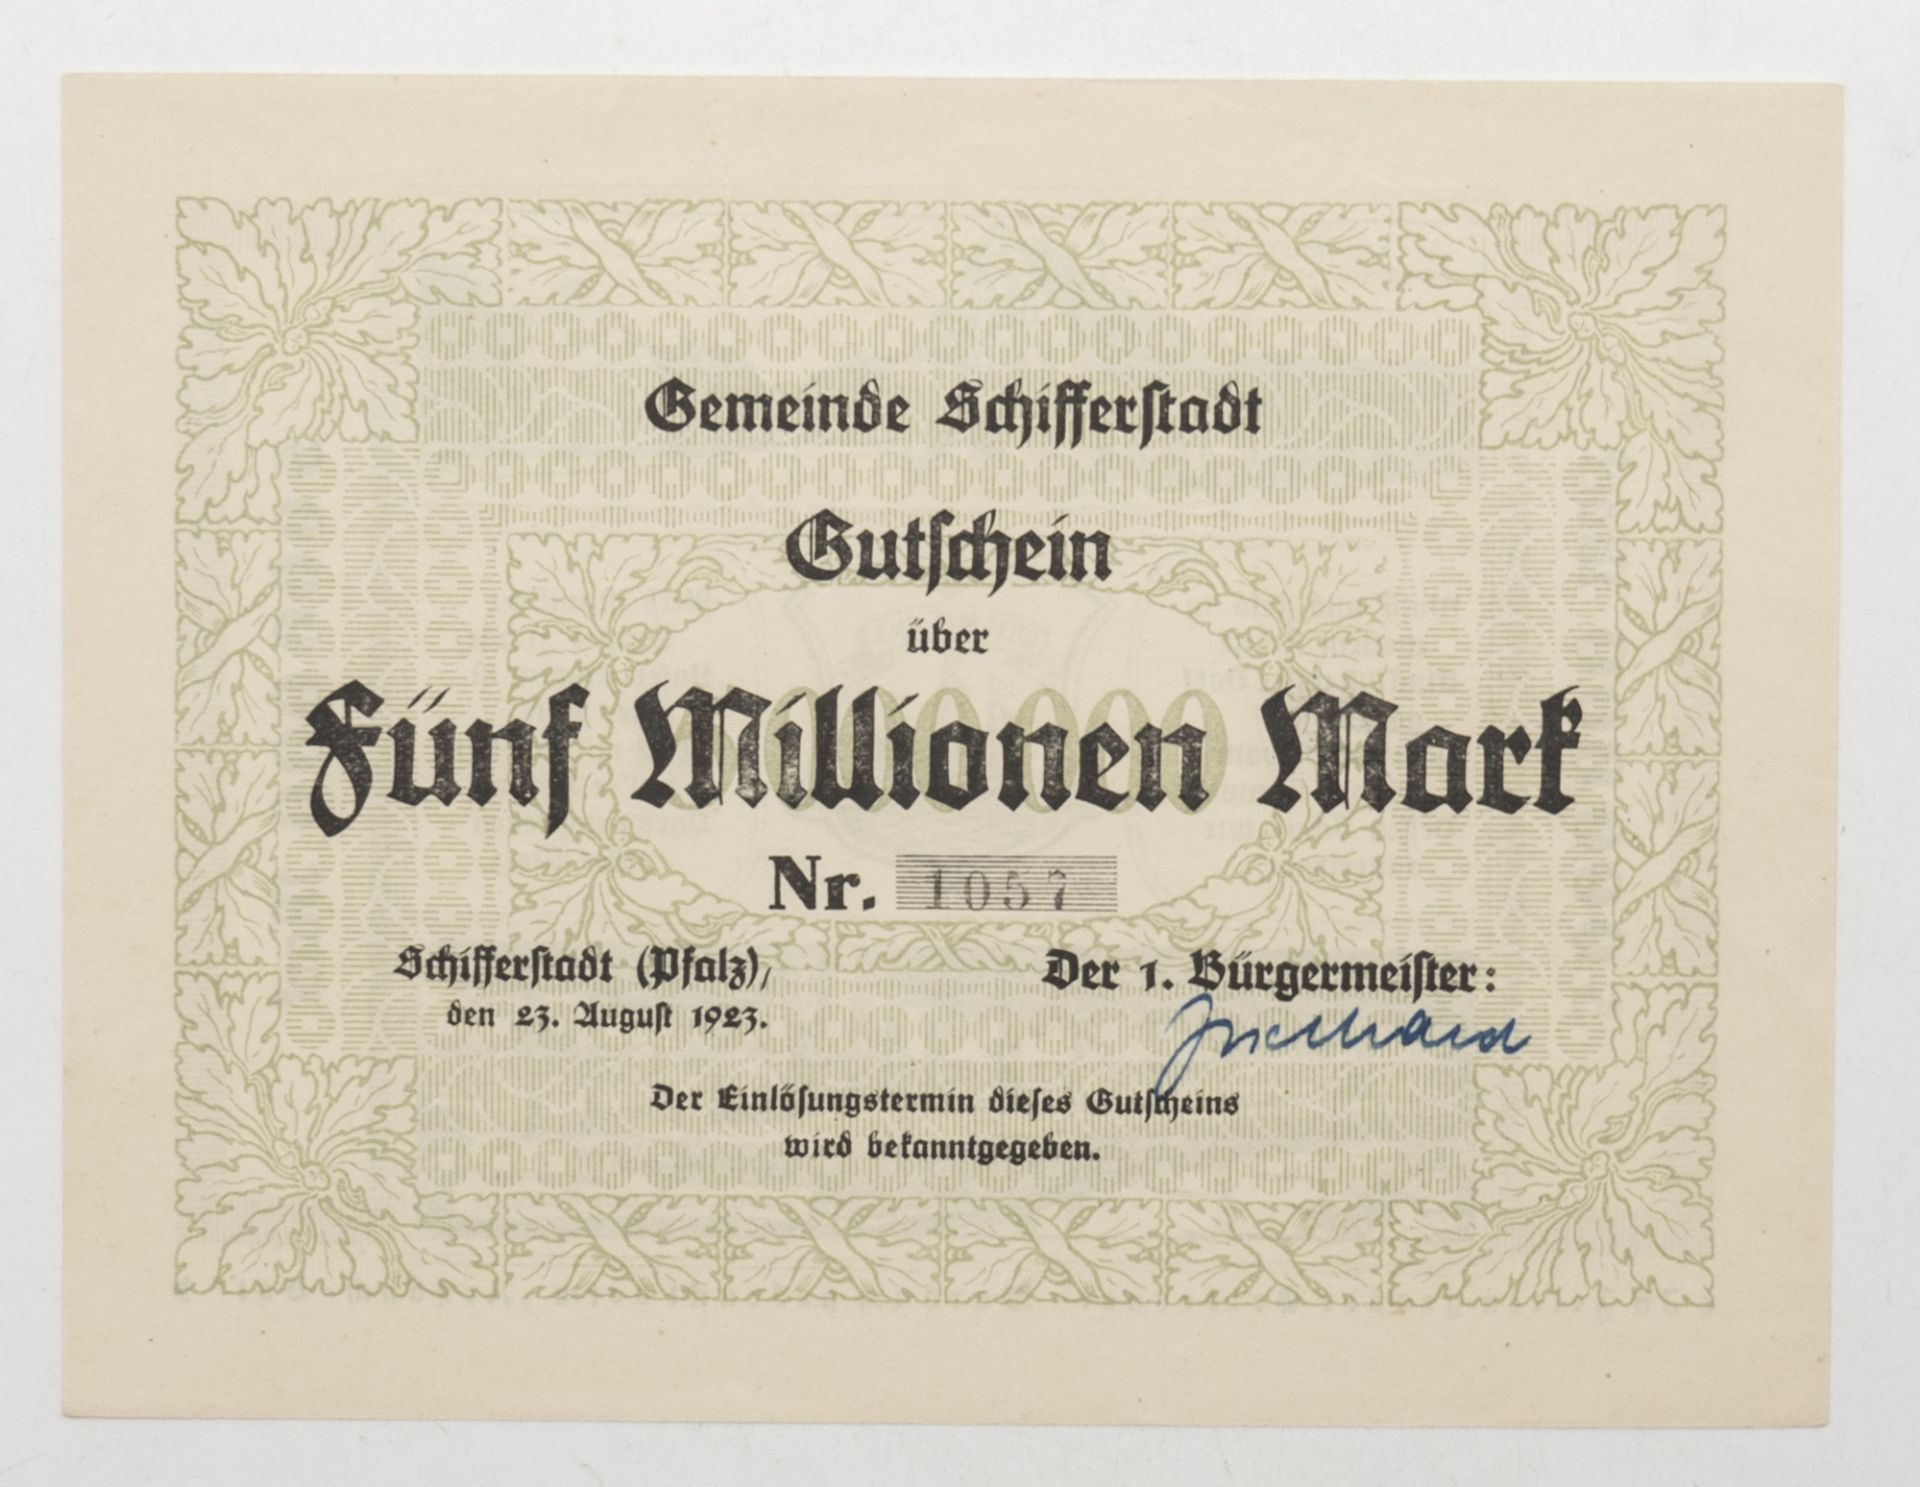 Gemeinde Schifferstadt 1923, Gutschein über 5 Millionen Mark. Nr. 1057. 23. August 1923.